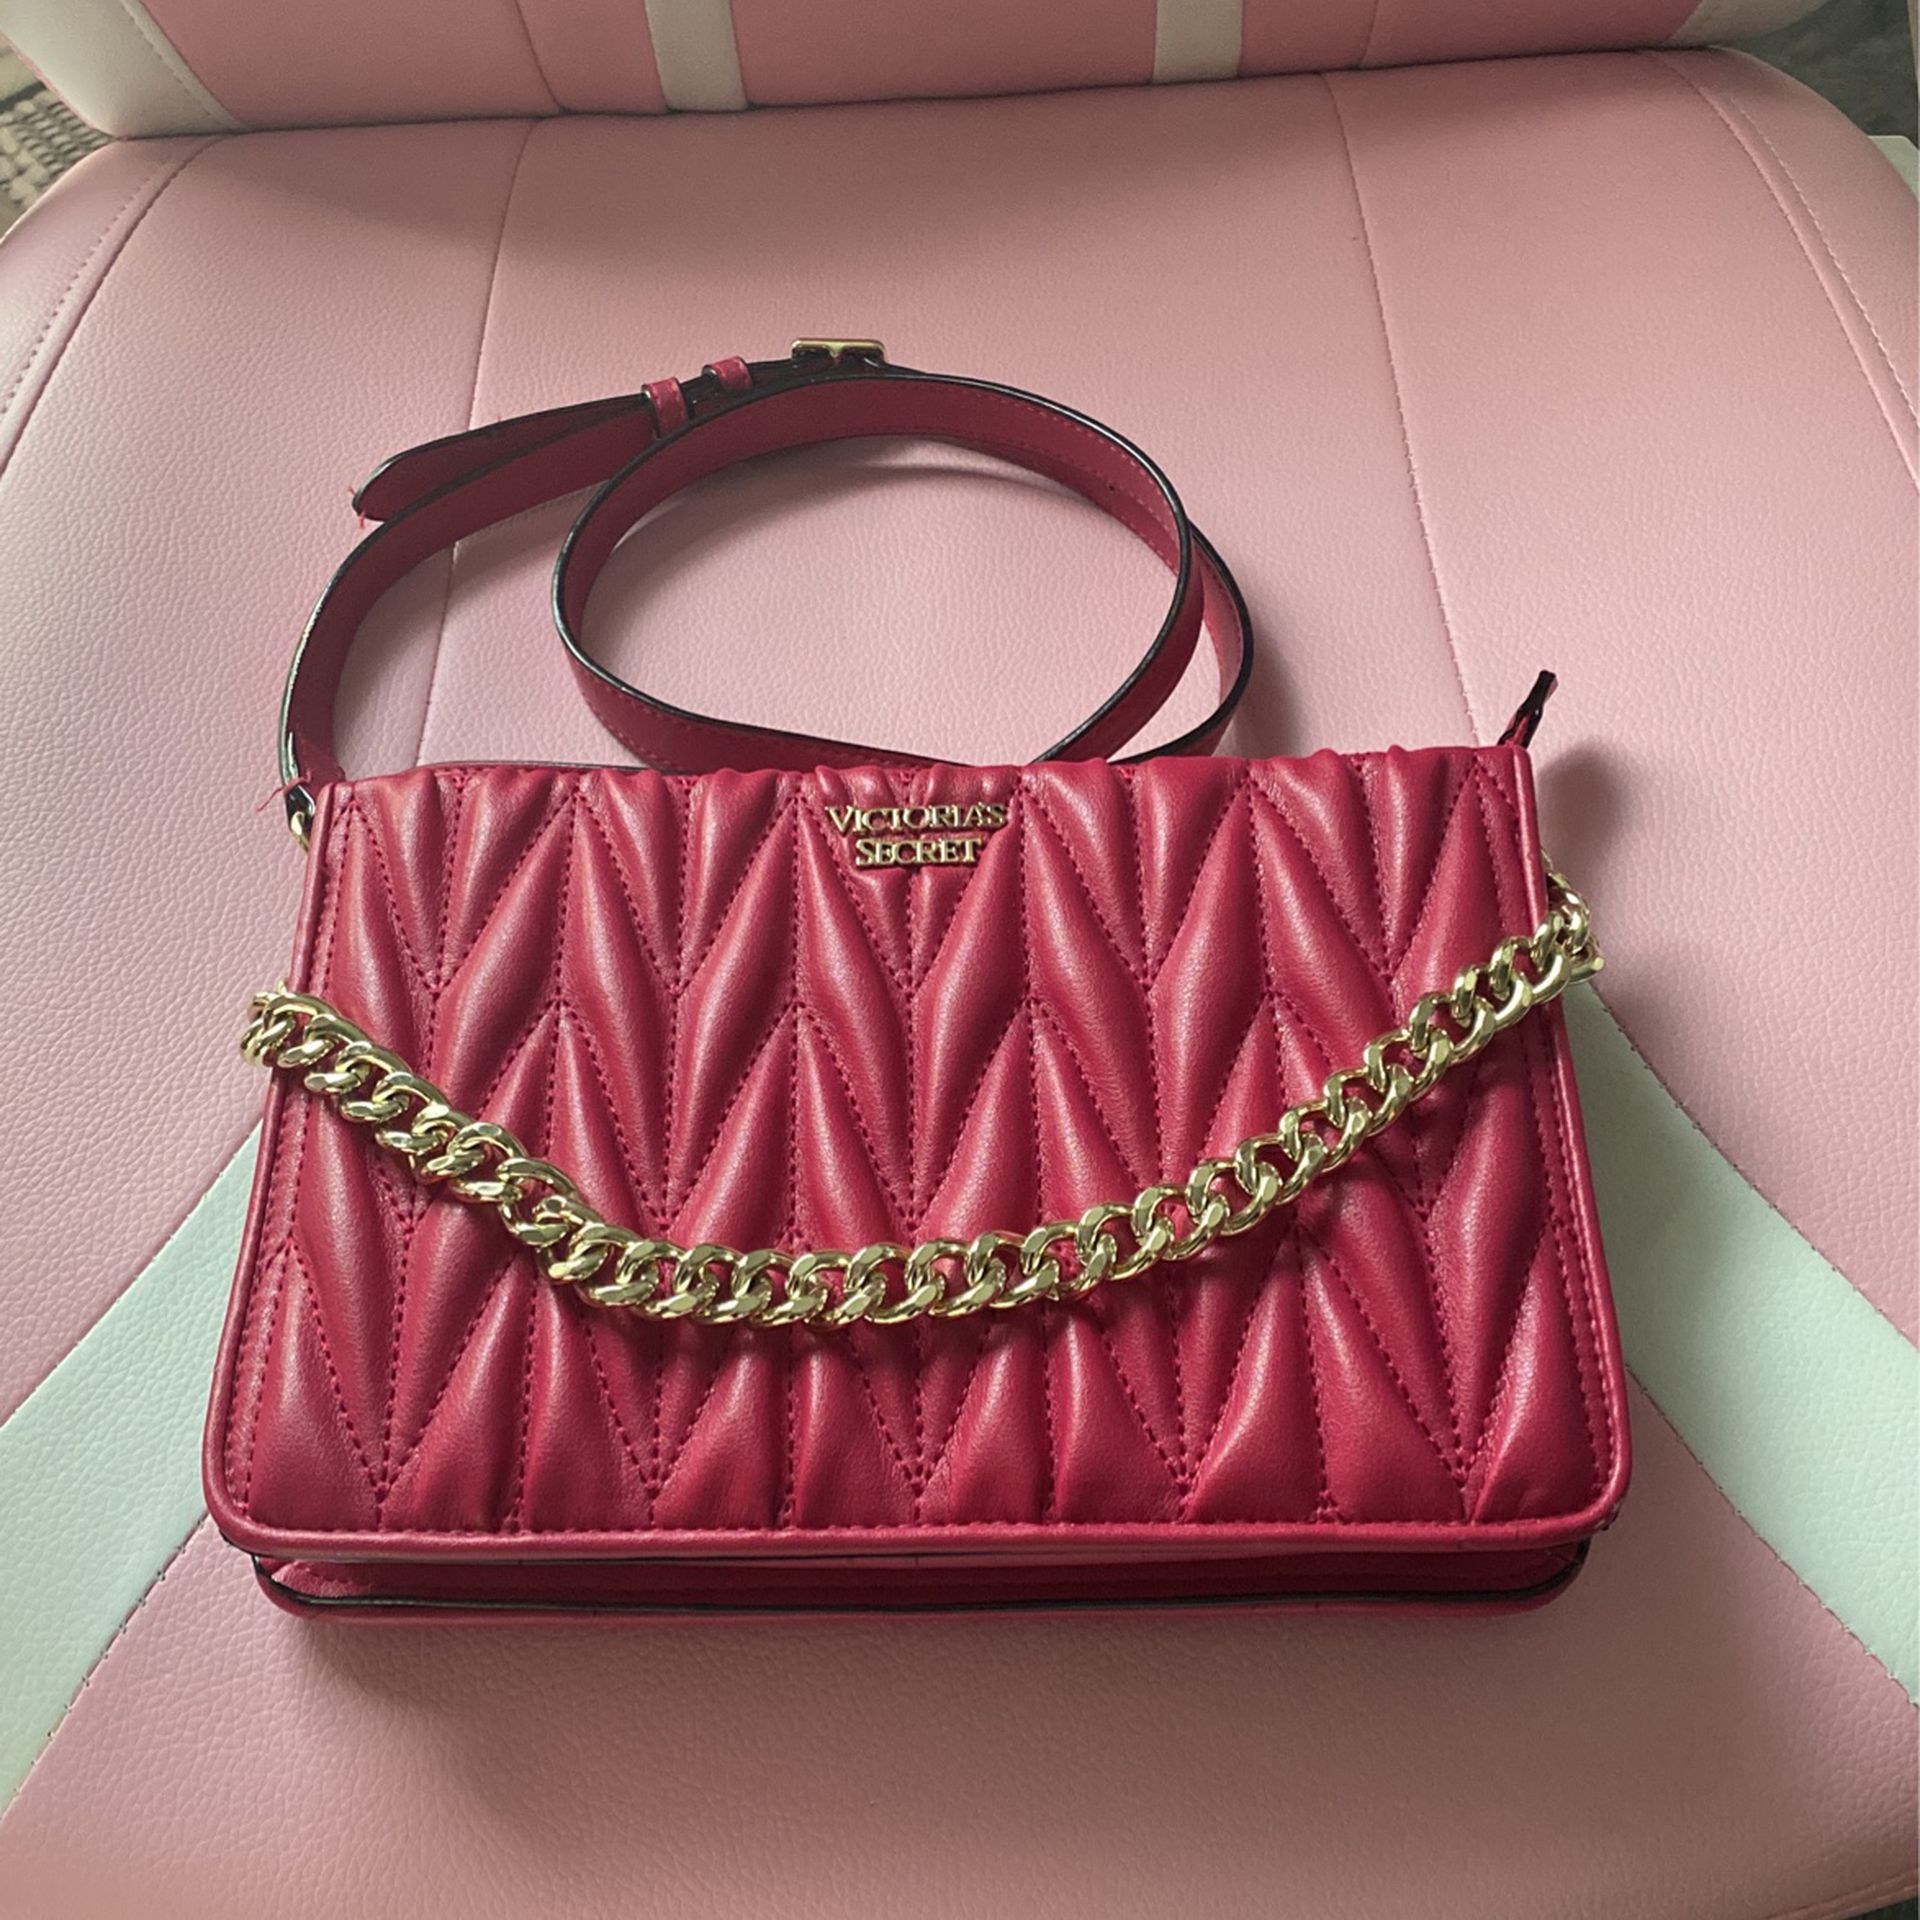 Victoria Secret Sling Bag Pink